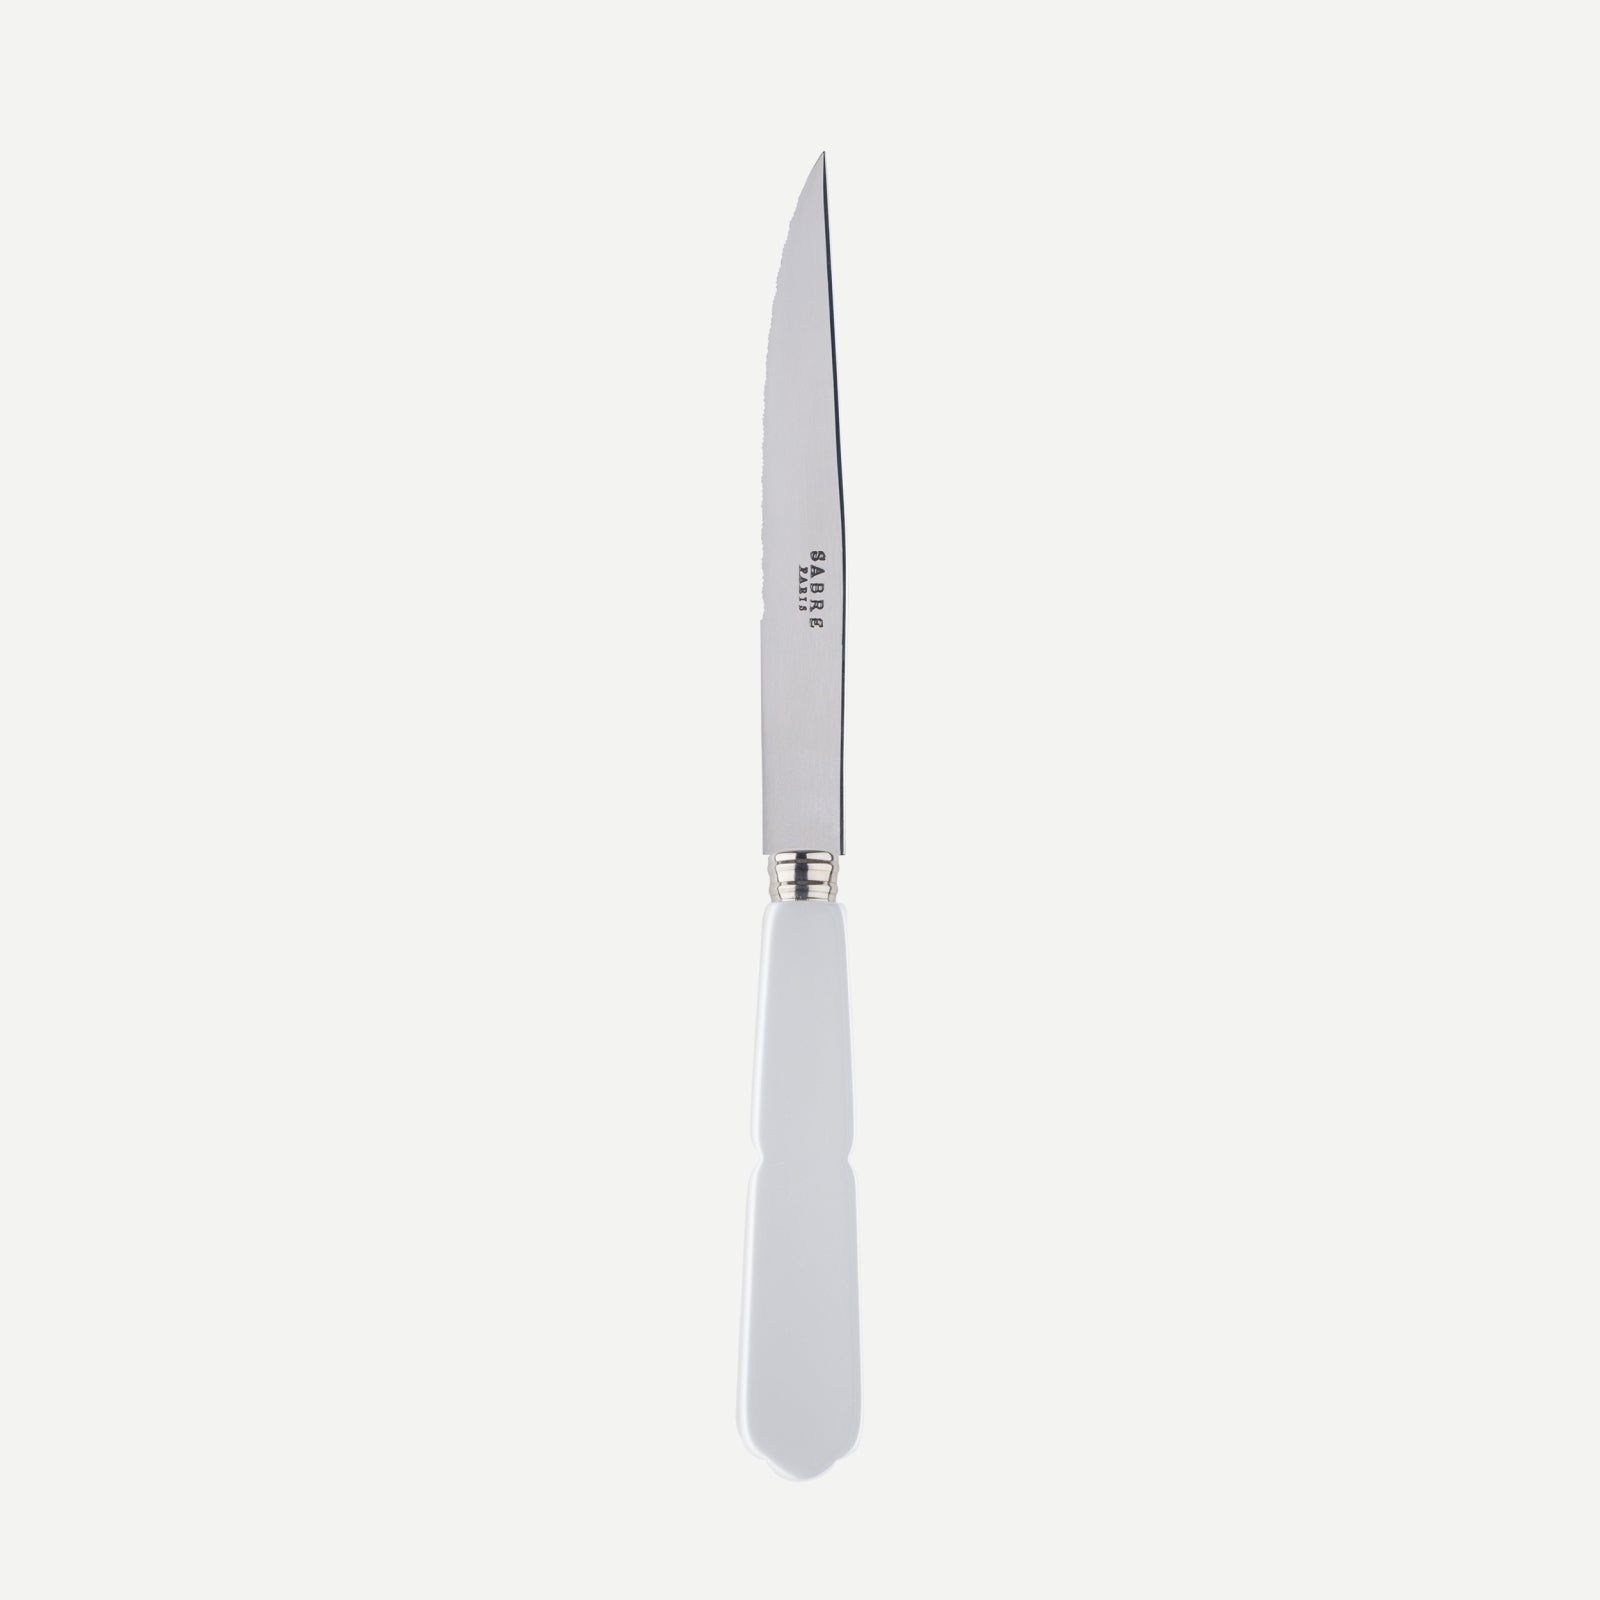 Steack knife - Gustave - White